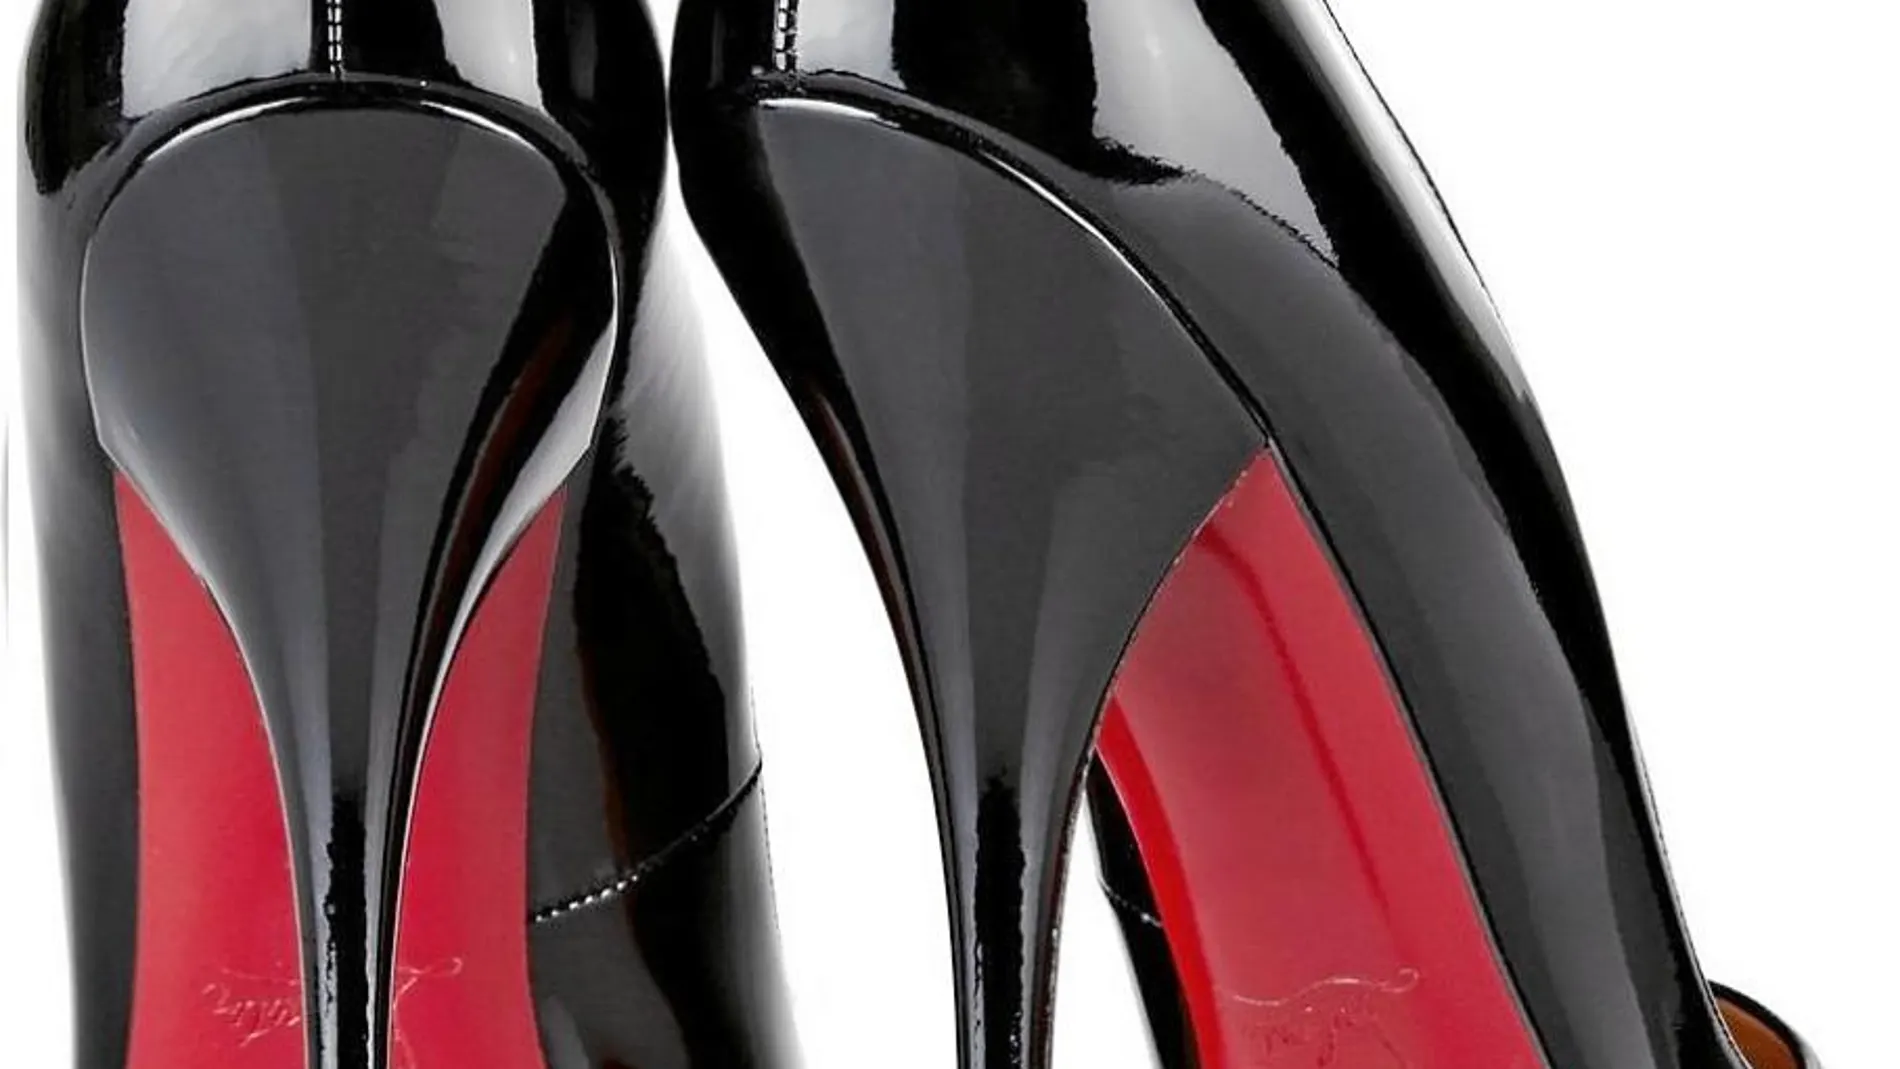 La suela roja es símbolo de elegancia y prestigio. En la imagen, el modelo Pigalle, uno de los más vendidos de Louboutin